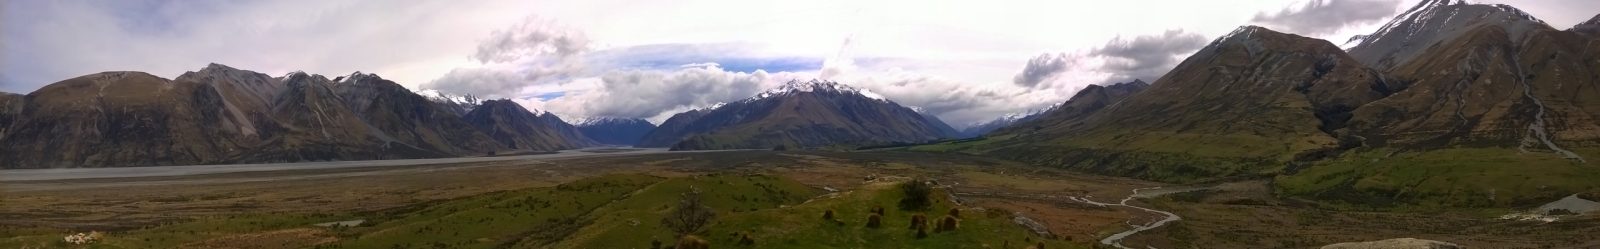 Mount Sunday, NZ
#NZ0009